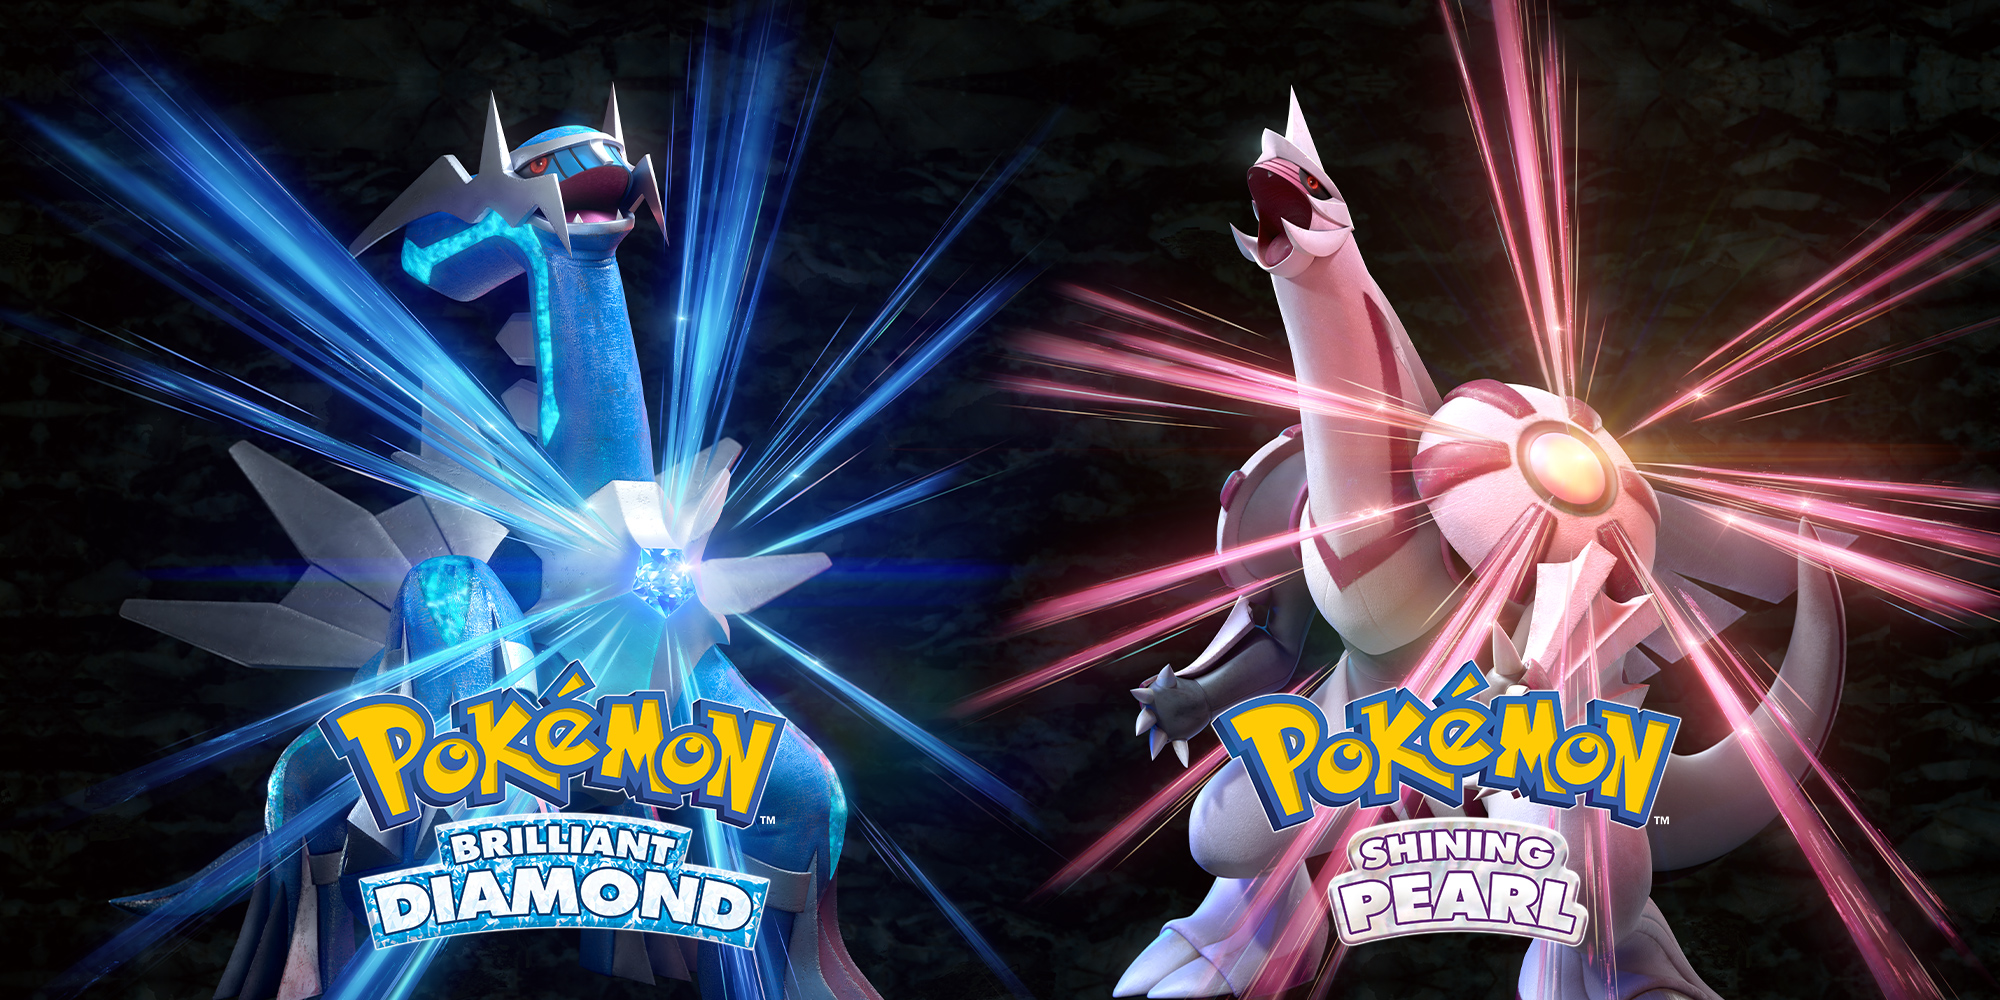 Os Líderes de Ginásio de Pokémon Brilliant Diamond and Shining Pearl